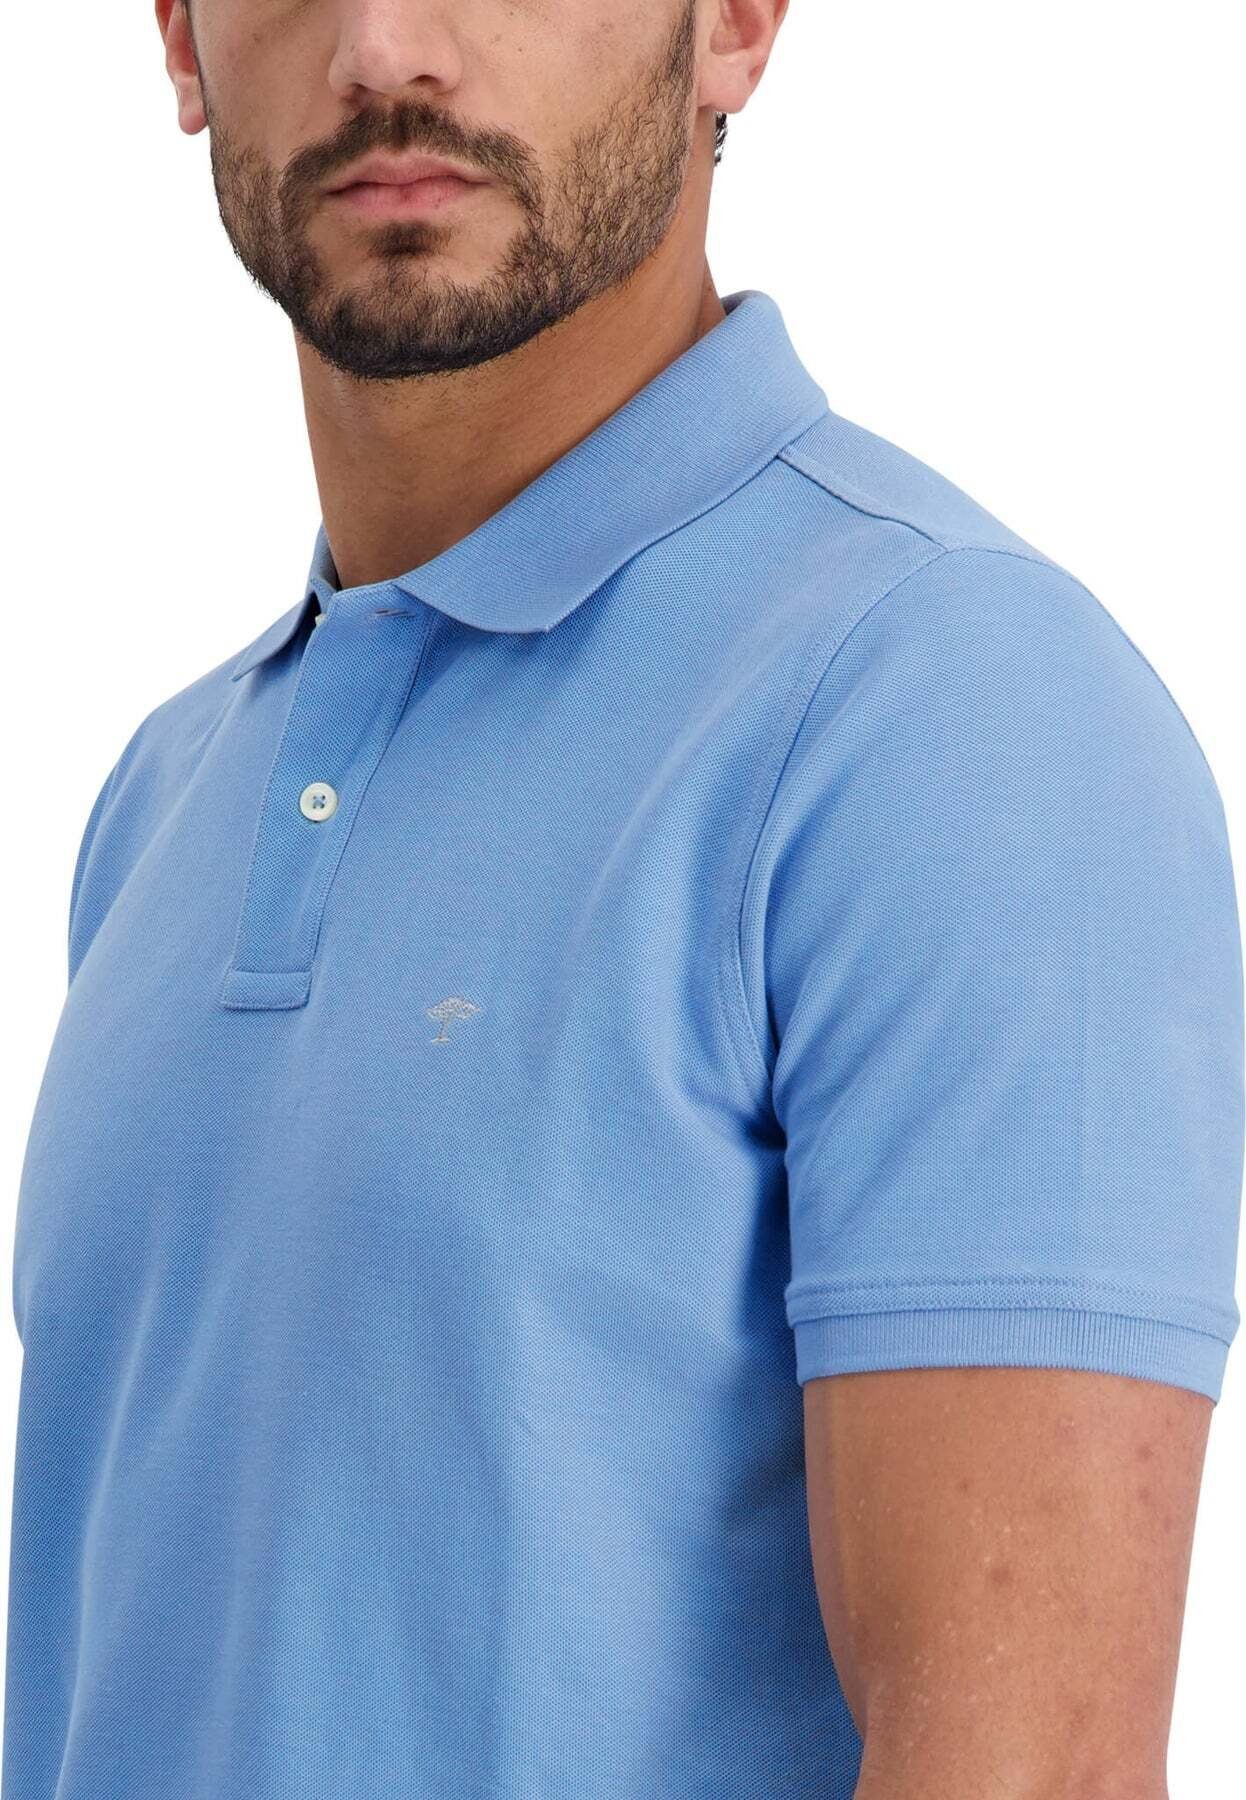 Poloshirt Polokragen mit blau FYNCH-HATTON Poloshirt Kurzarmshirt